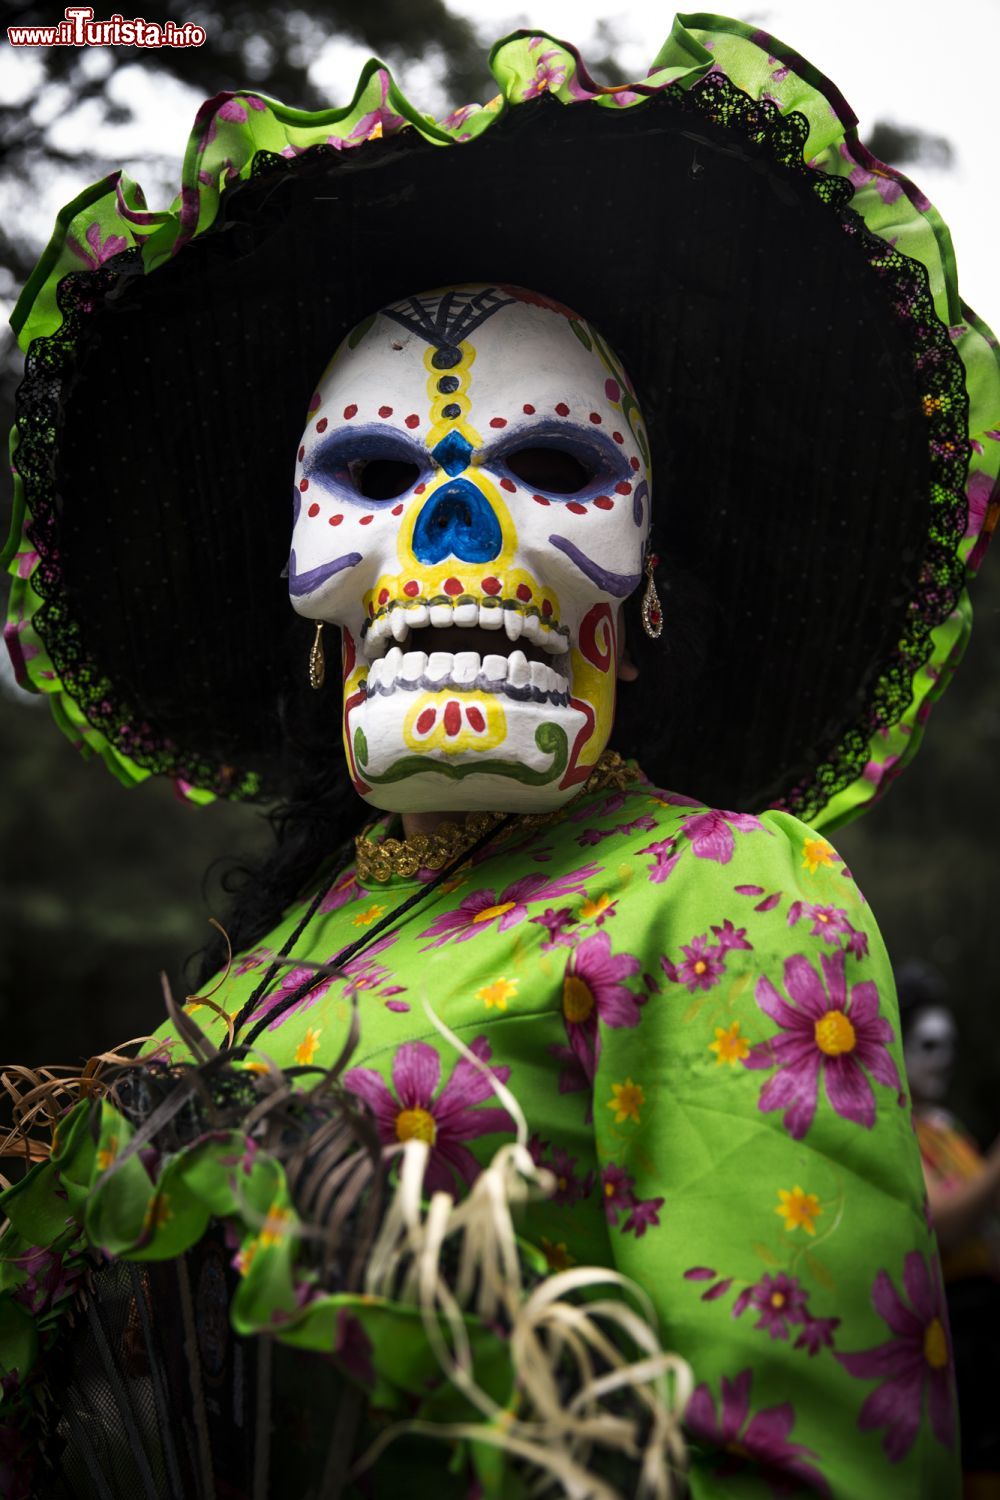 Immagine Tradizionalmente, ogni anno il Messico si prepara a dare il benvenuto ai suoi defunti colorando la morte e prendendosi gioco di lei con manifestazioni di diverso genere.